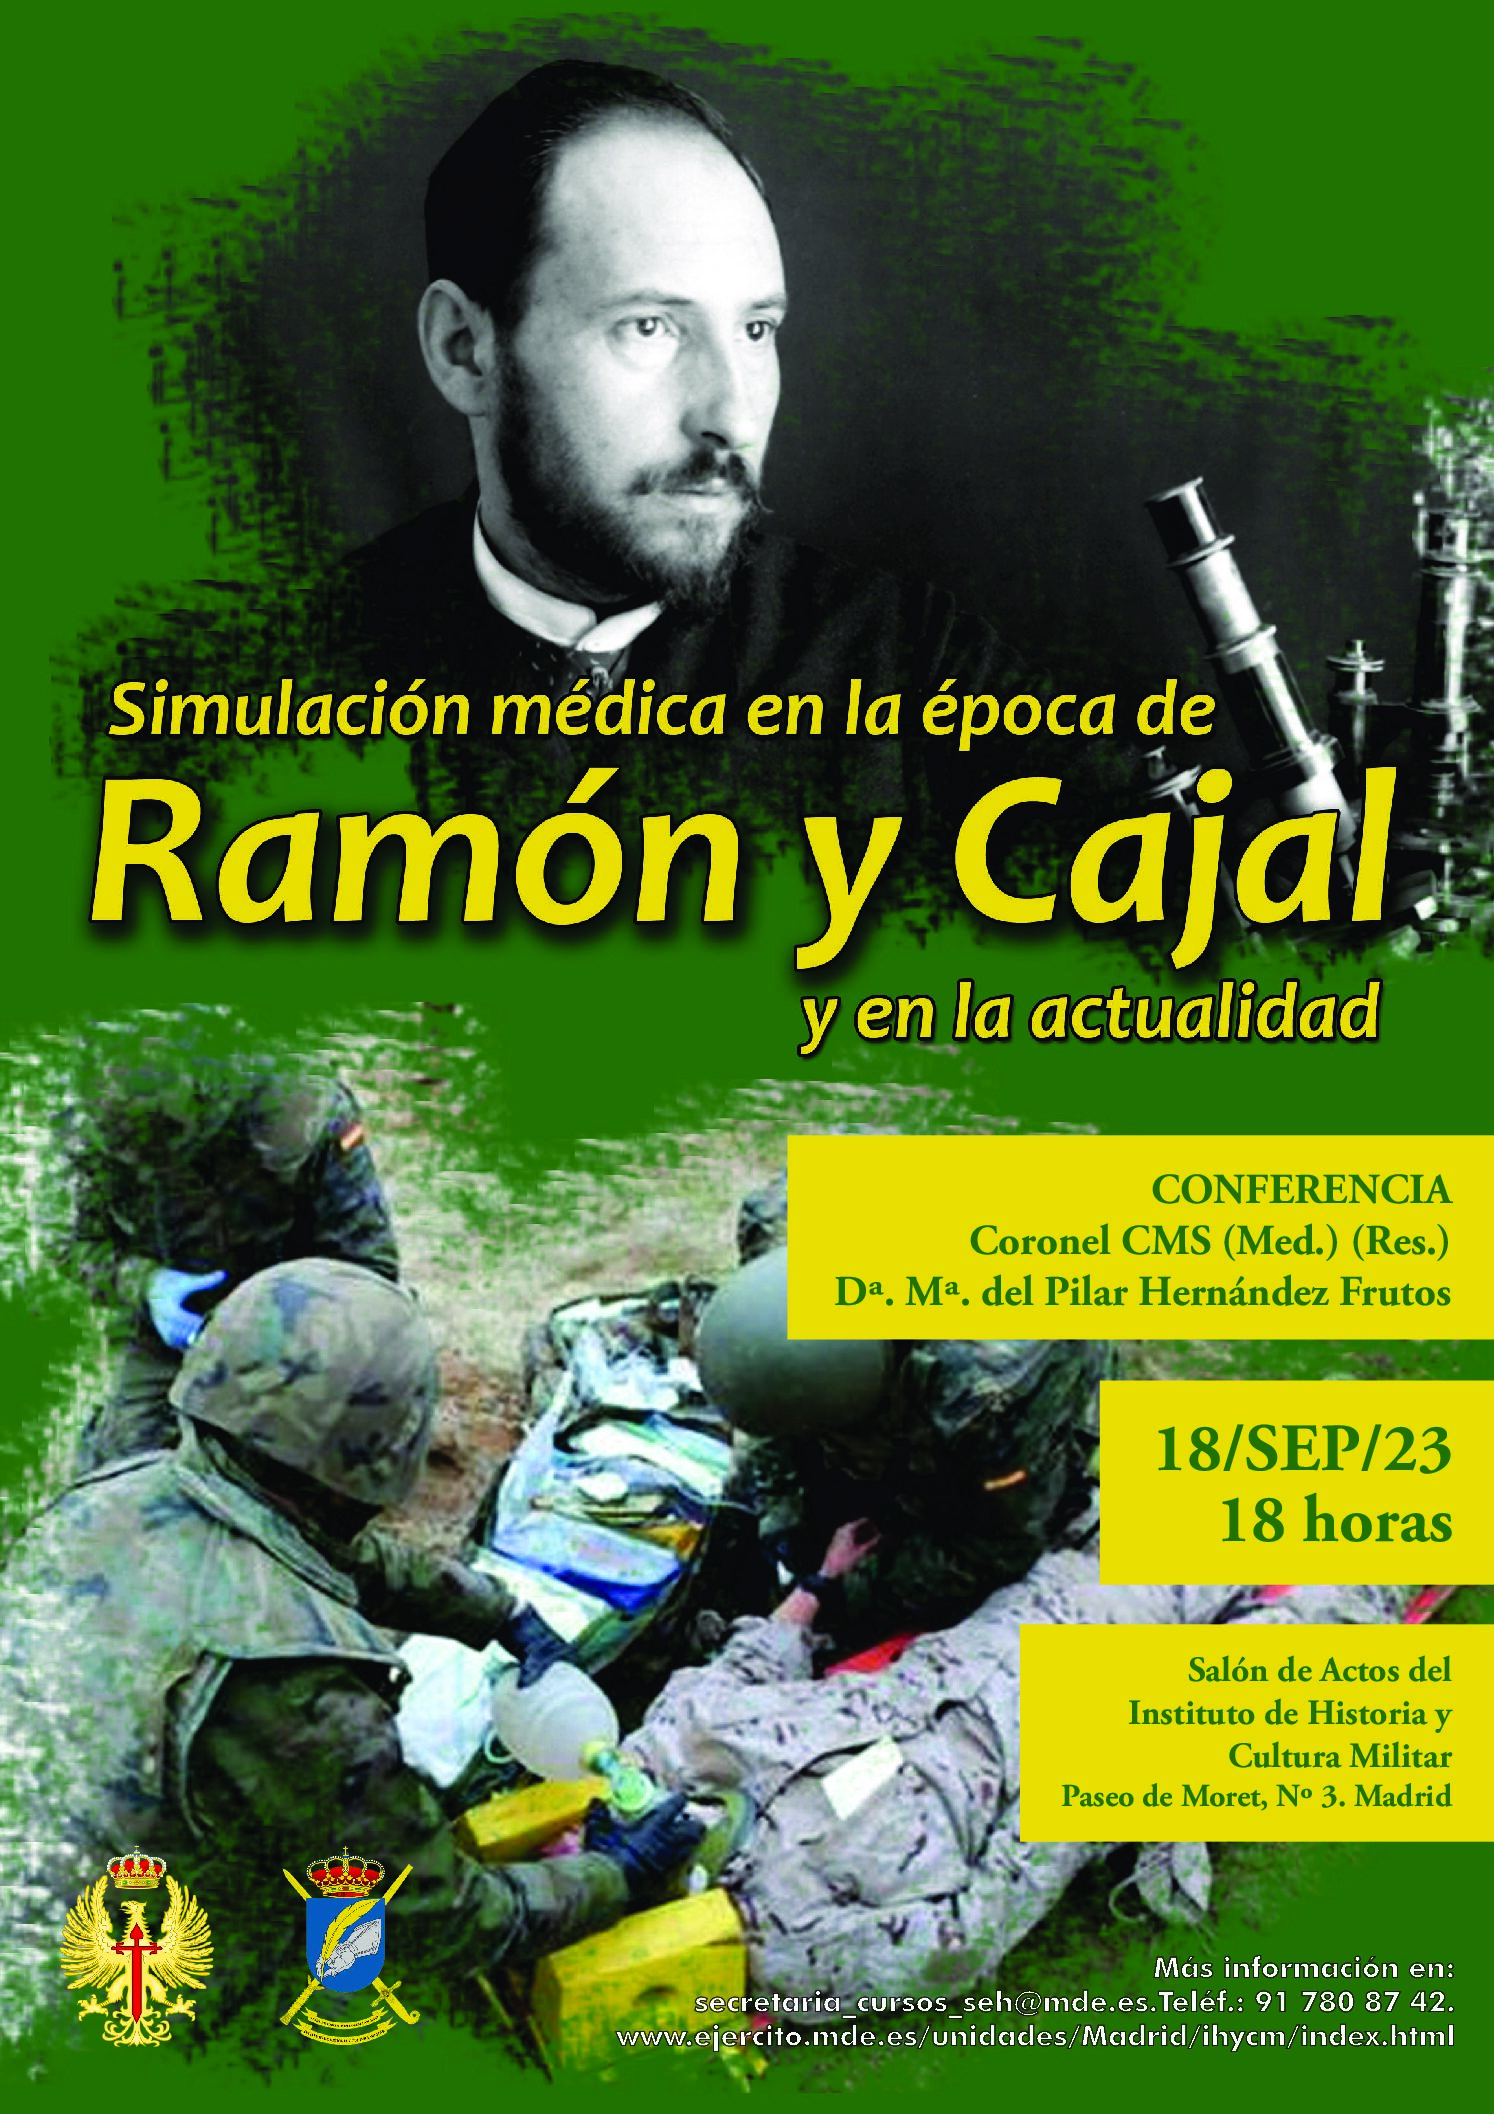 18 de septiembre. AEME/IHCM. Conferencia: "Simulación medica en la epoca de Ramon y Cajal y en la actualidad"